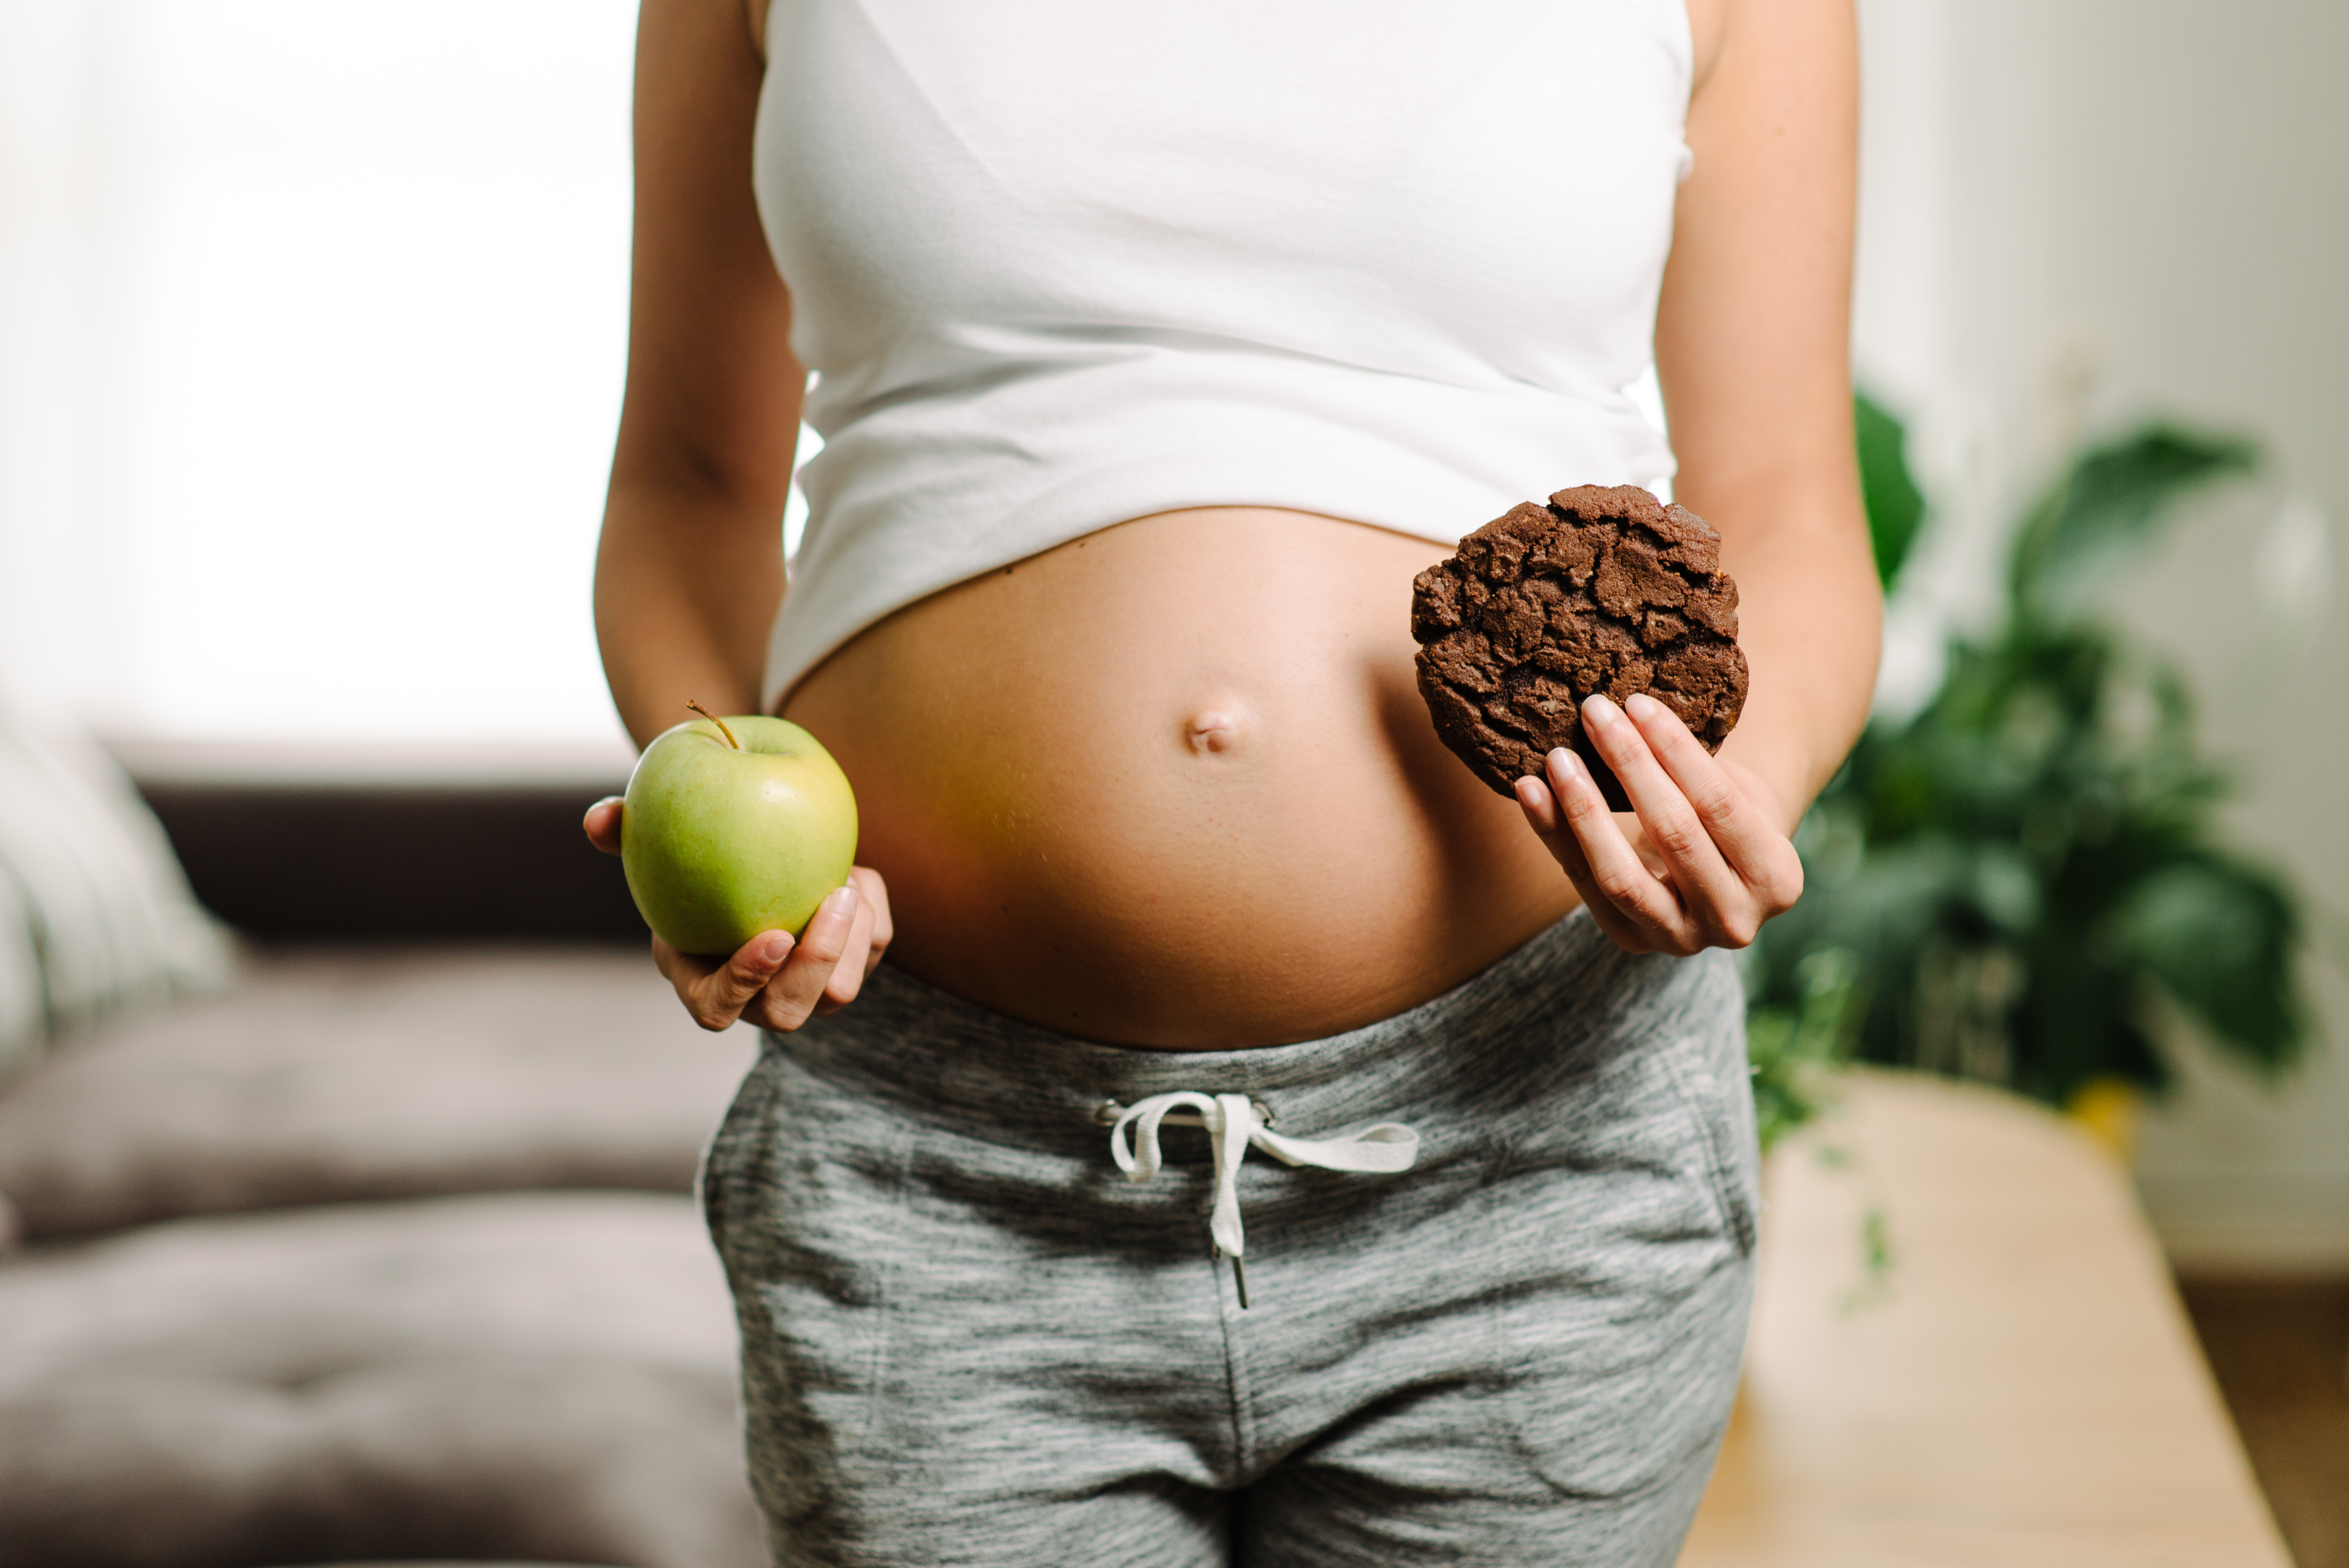 L’équilibre métabolique et le poids corporel maternels ont toute leur importance pour la santé future du nourrisson (Adobe Stock 172641087)